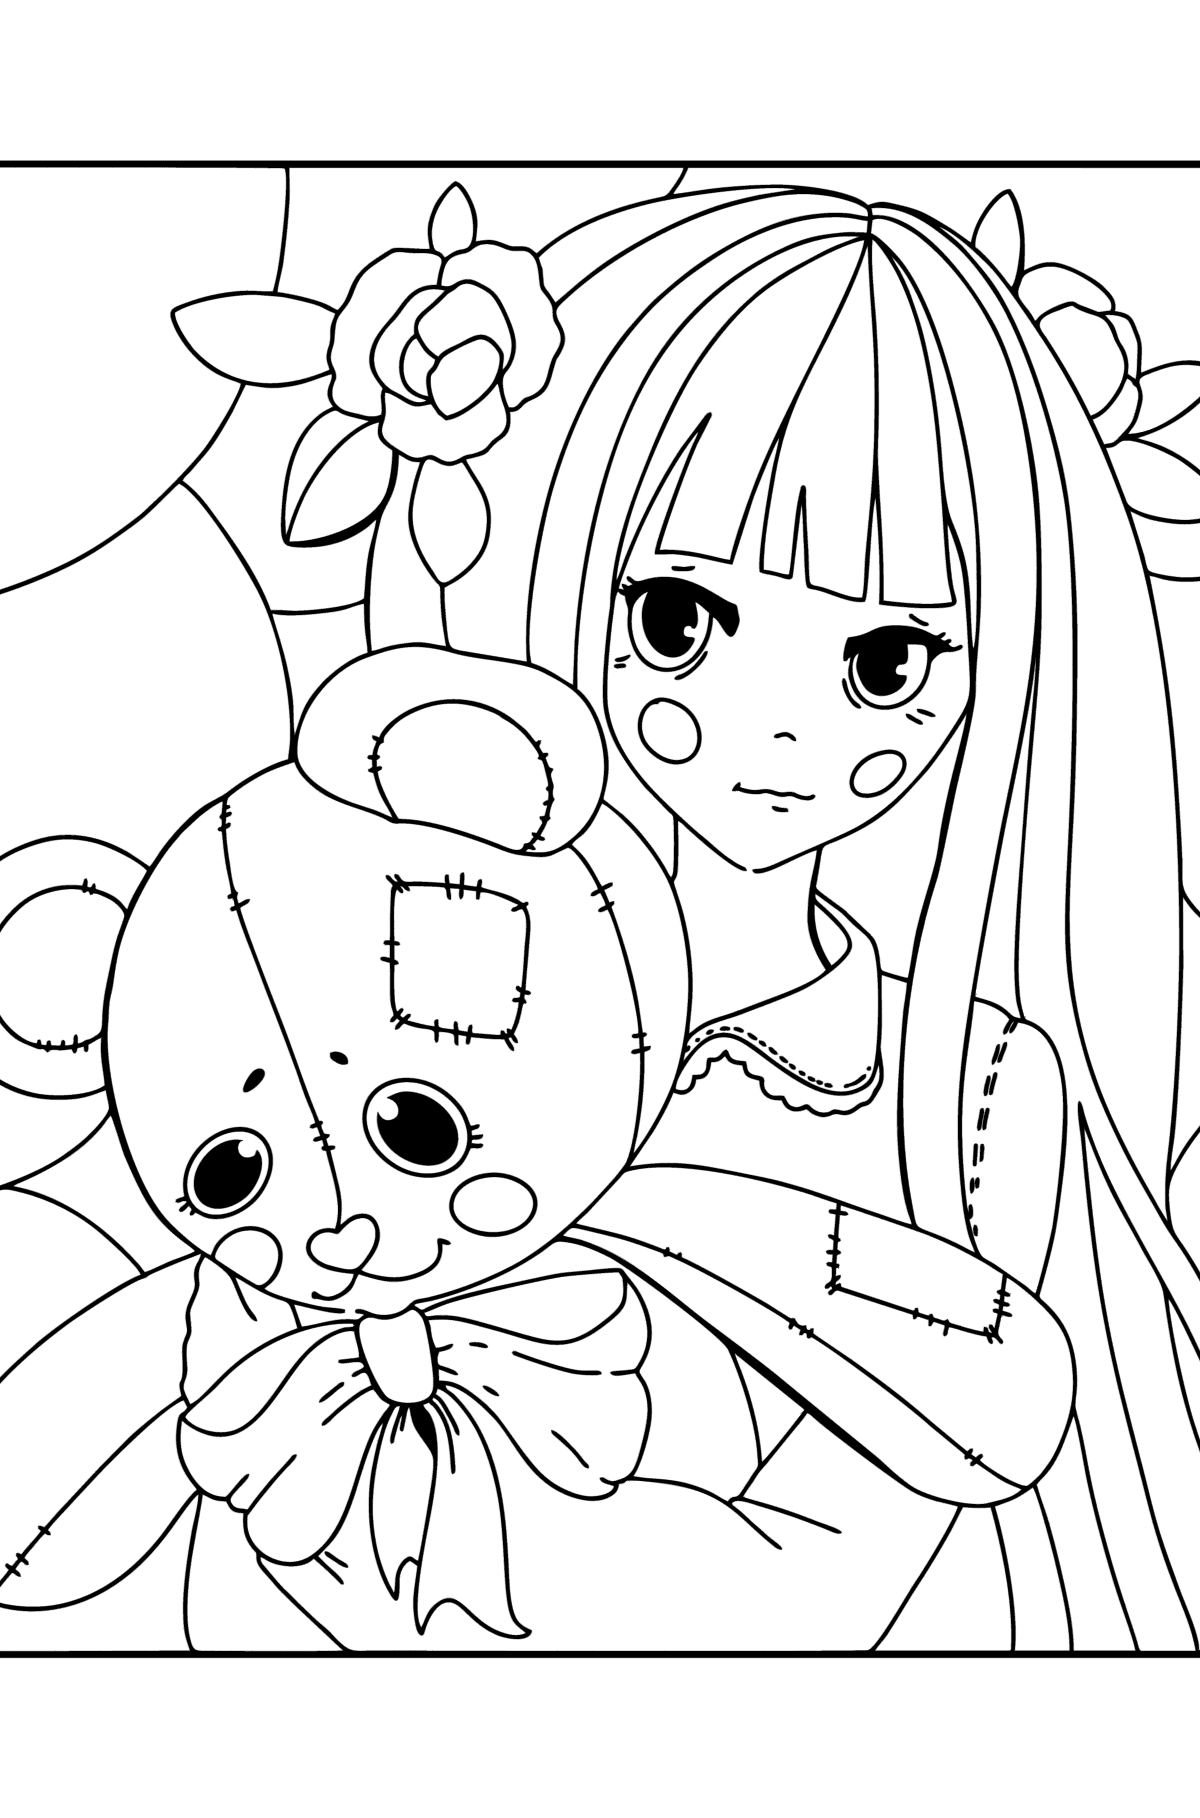 Anime pige, der holder en bamse tegning til farvning - Tegninger til farvelægning for børn